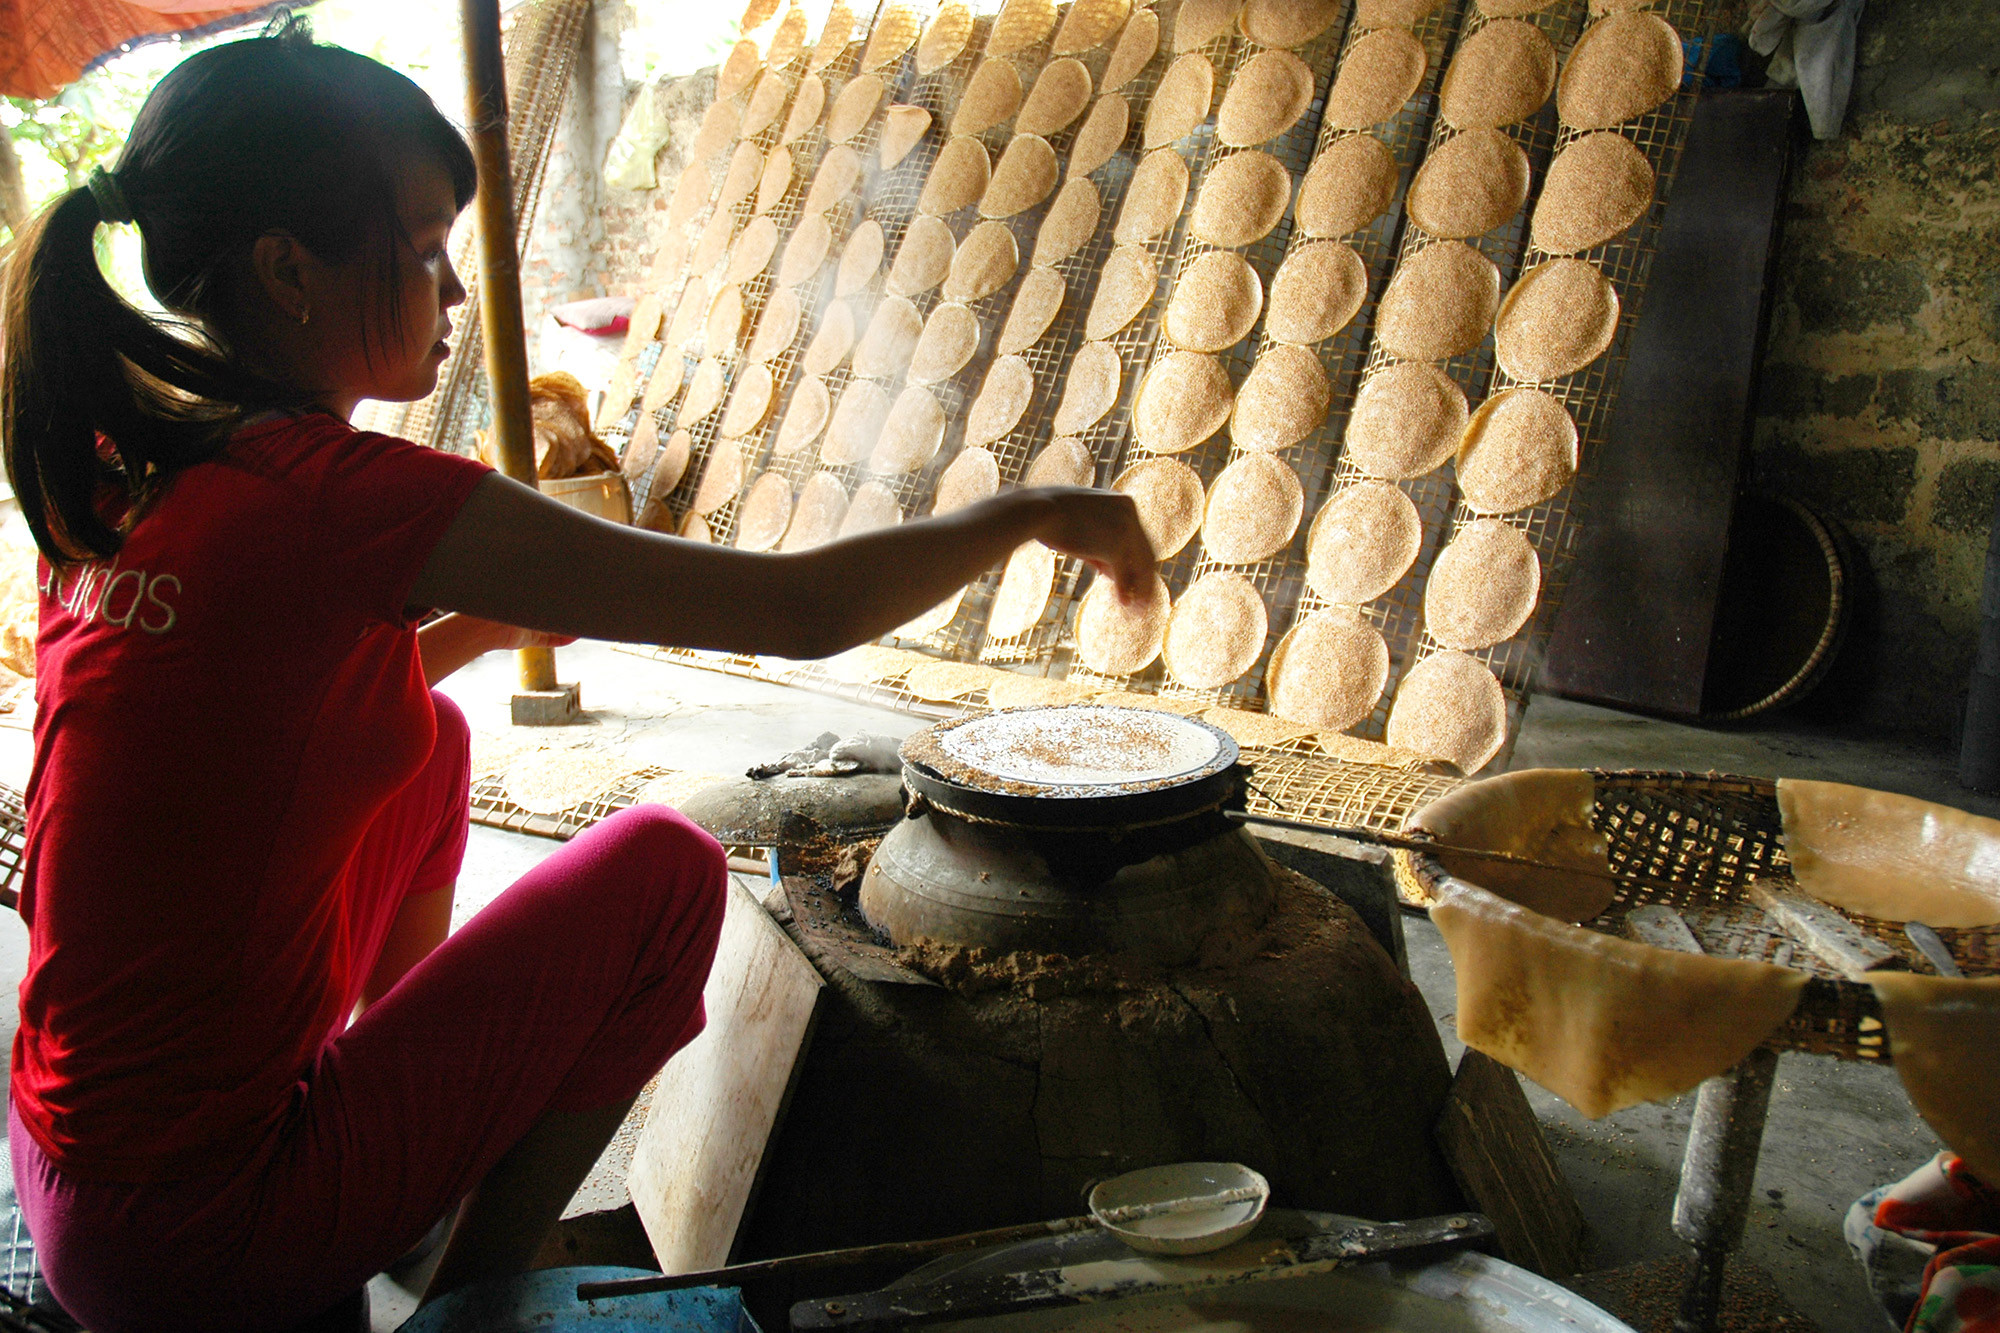 Bánh khô truyền thống (bánh đa vừng) ở xóm Trung Yên được sản xuất thủ công. Ông Hòa - xóm trưởng cho biết: trung bình mỗi ngày các hộ gia đình tiêu thụ hết 5-6 tạ gạo nguyên liệu cho sản xuất bánh đa nem. Những hộ làm bánh khô tiêu thụ trung bình 30-40 kg gạo nguyên liệu.